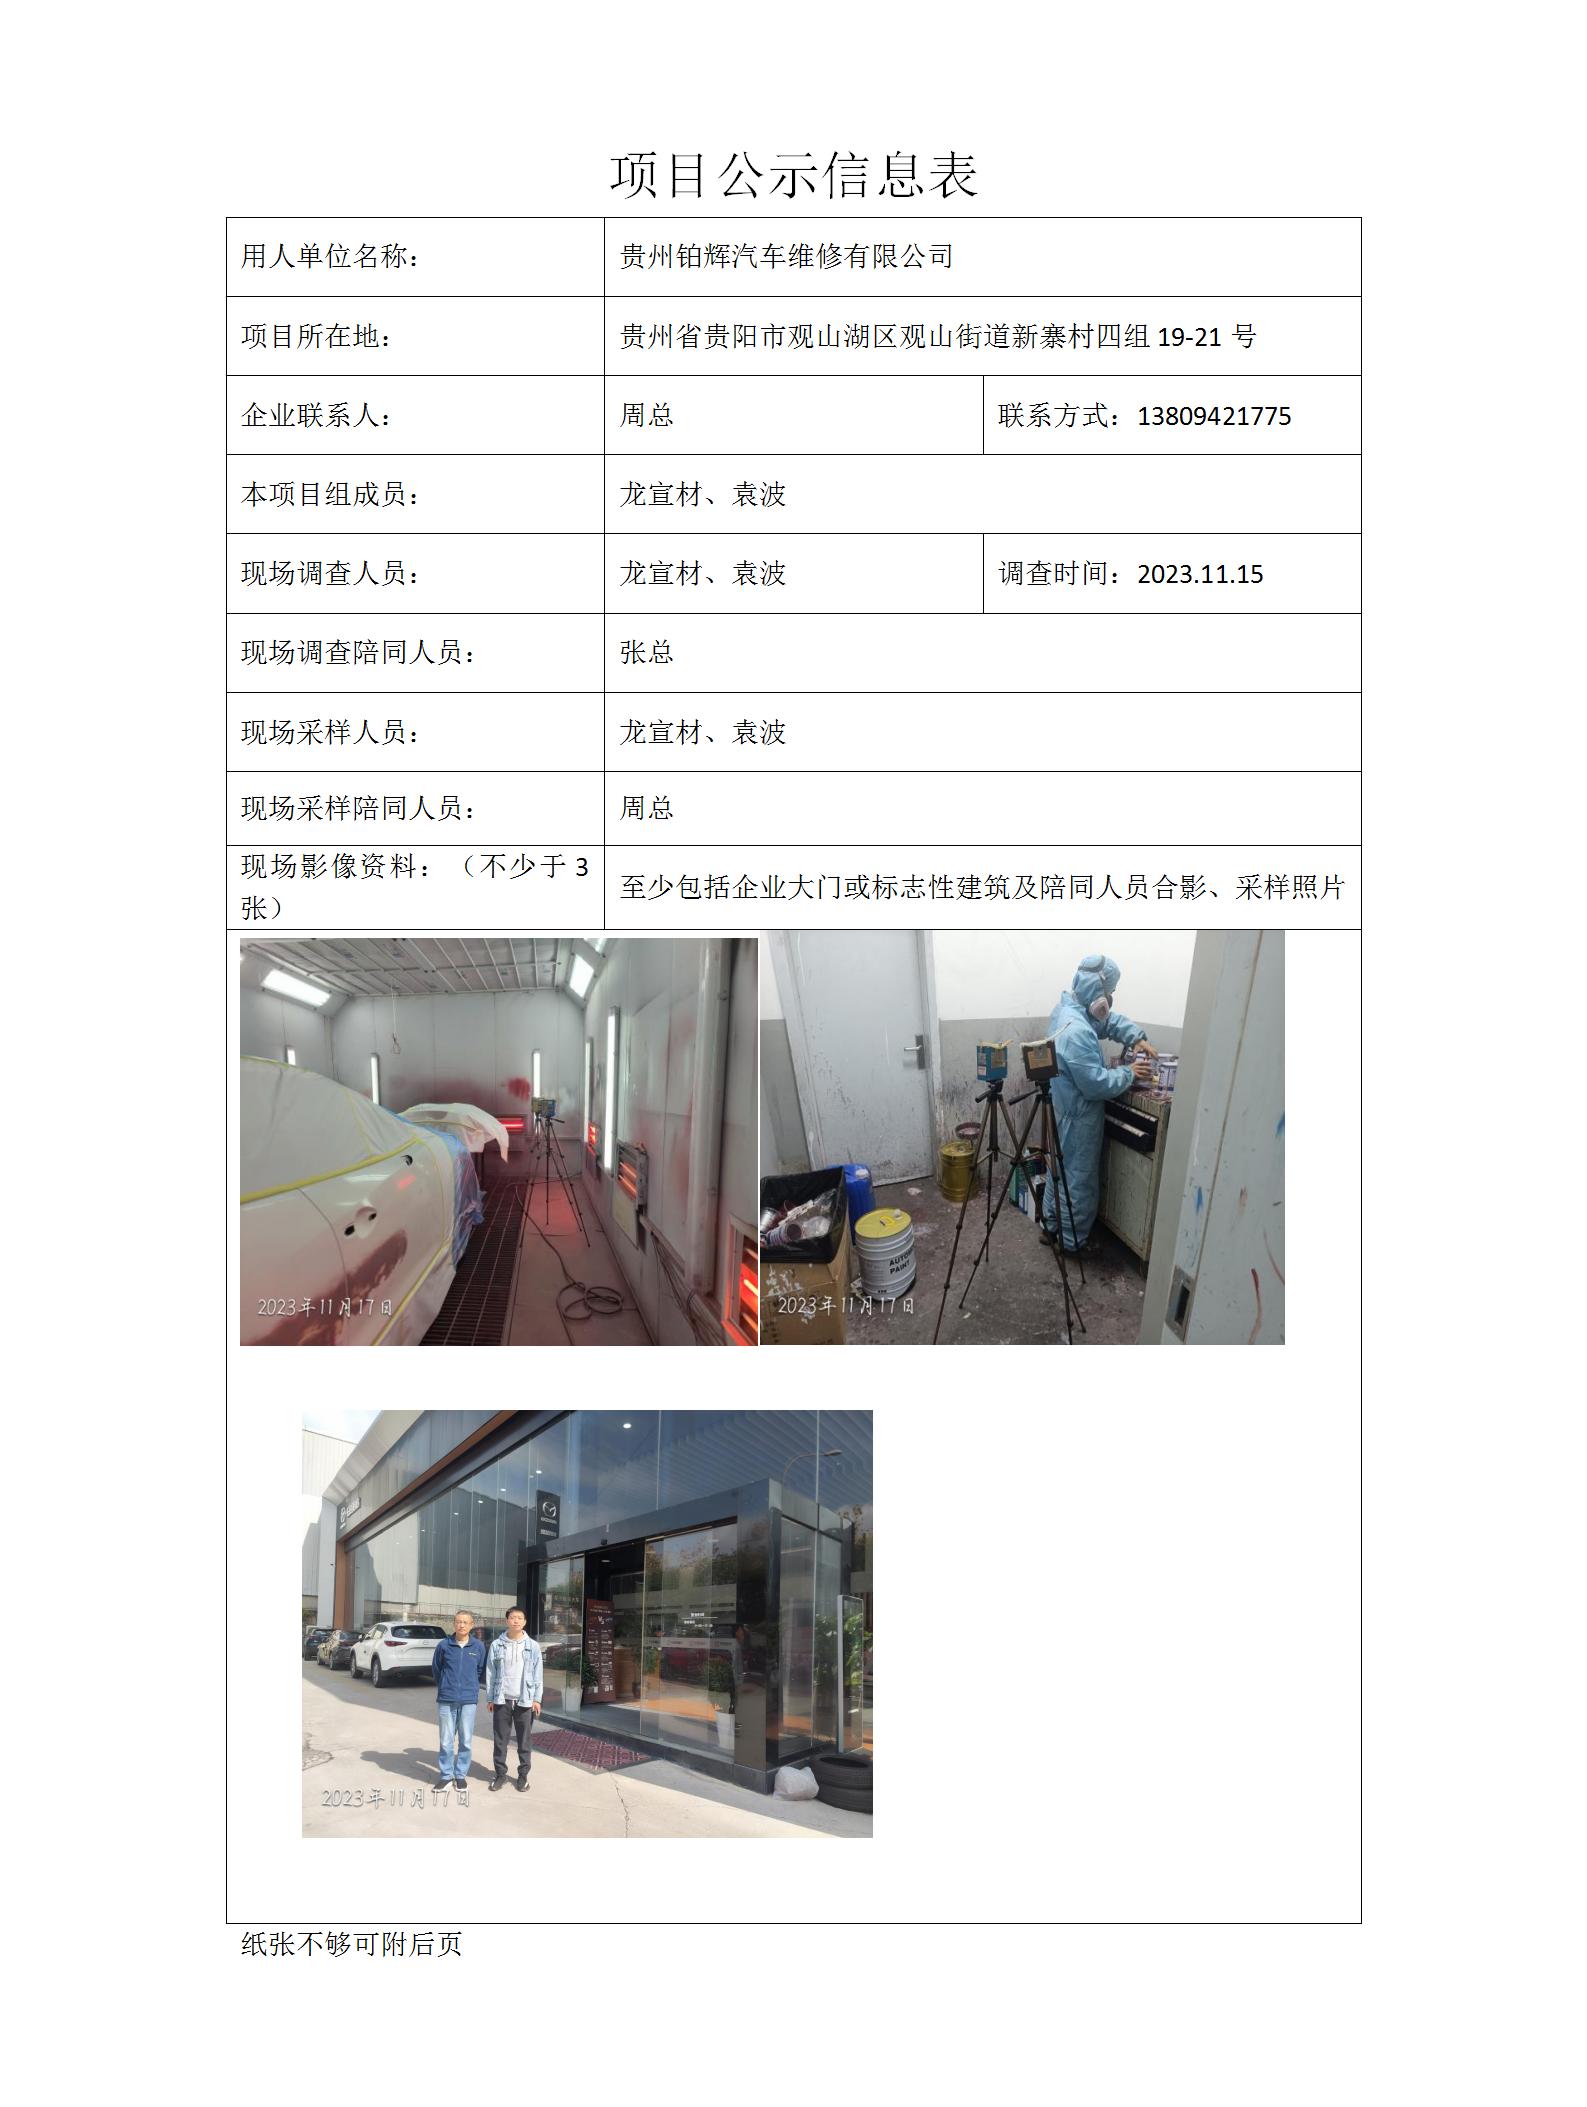 贵州铂辉汽车维修有限公司项目公示信息表docx_01.jpg